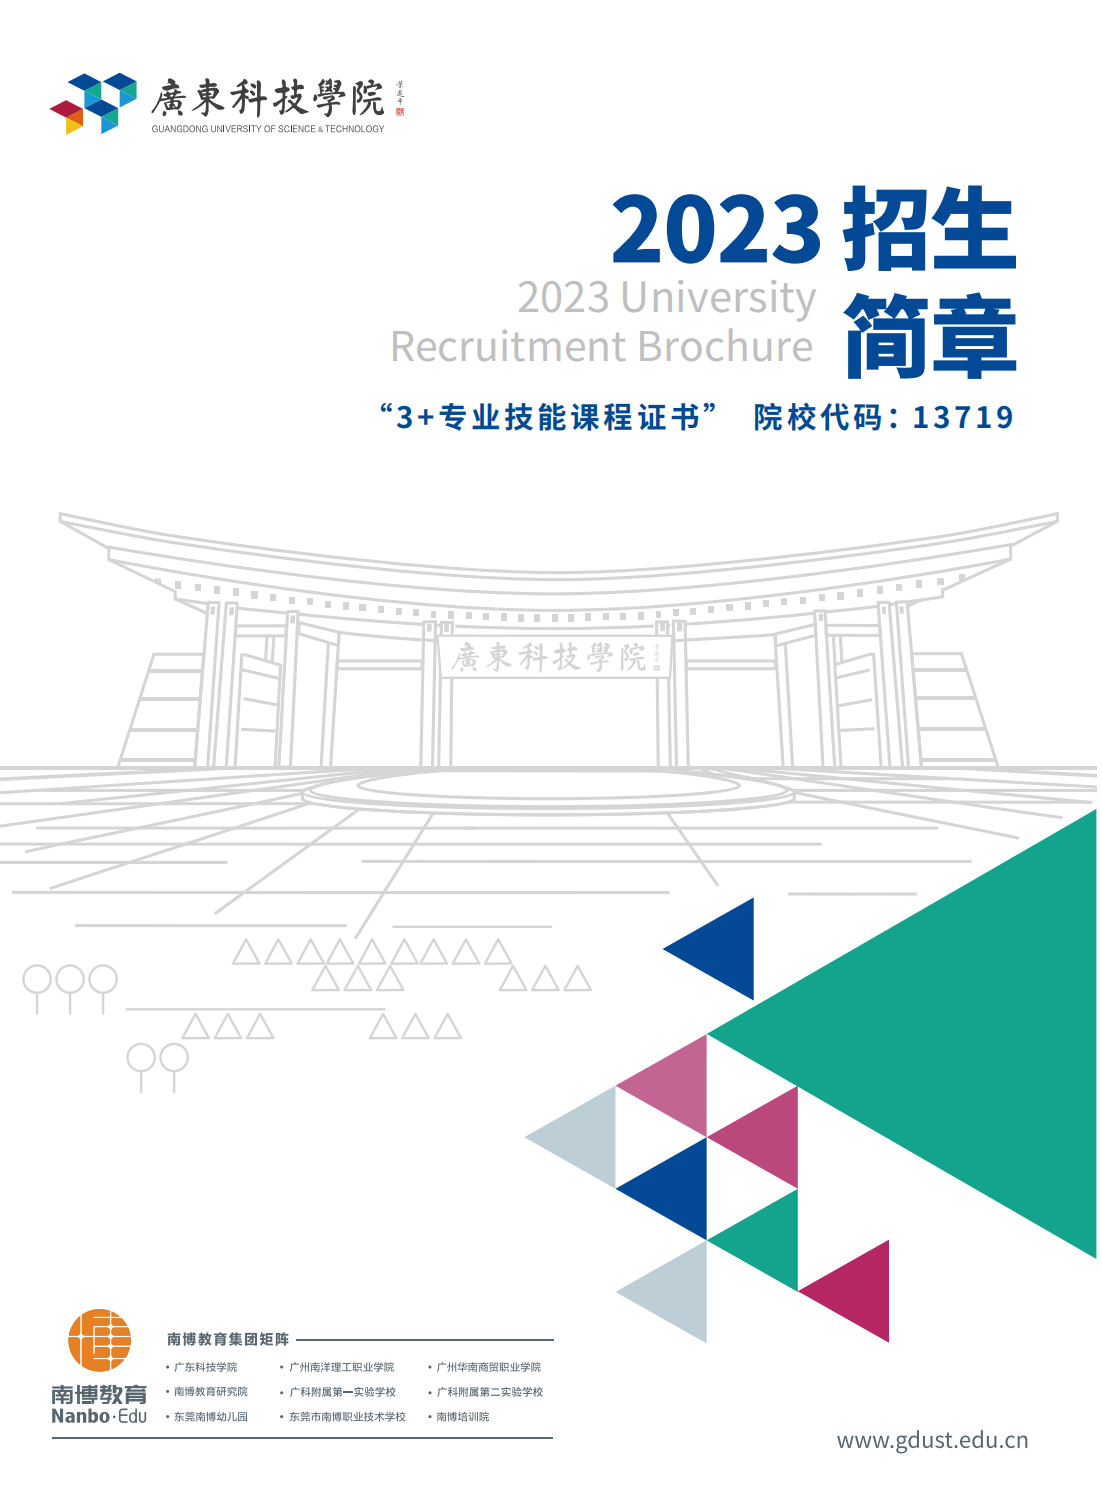 广东科技学院2023年3+证书简章